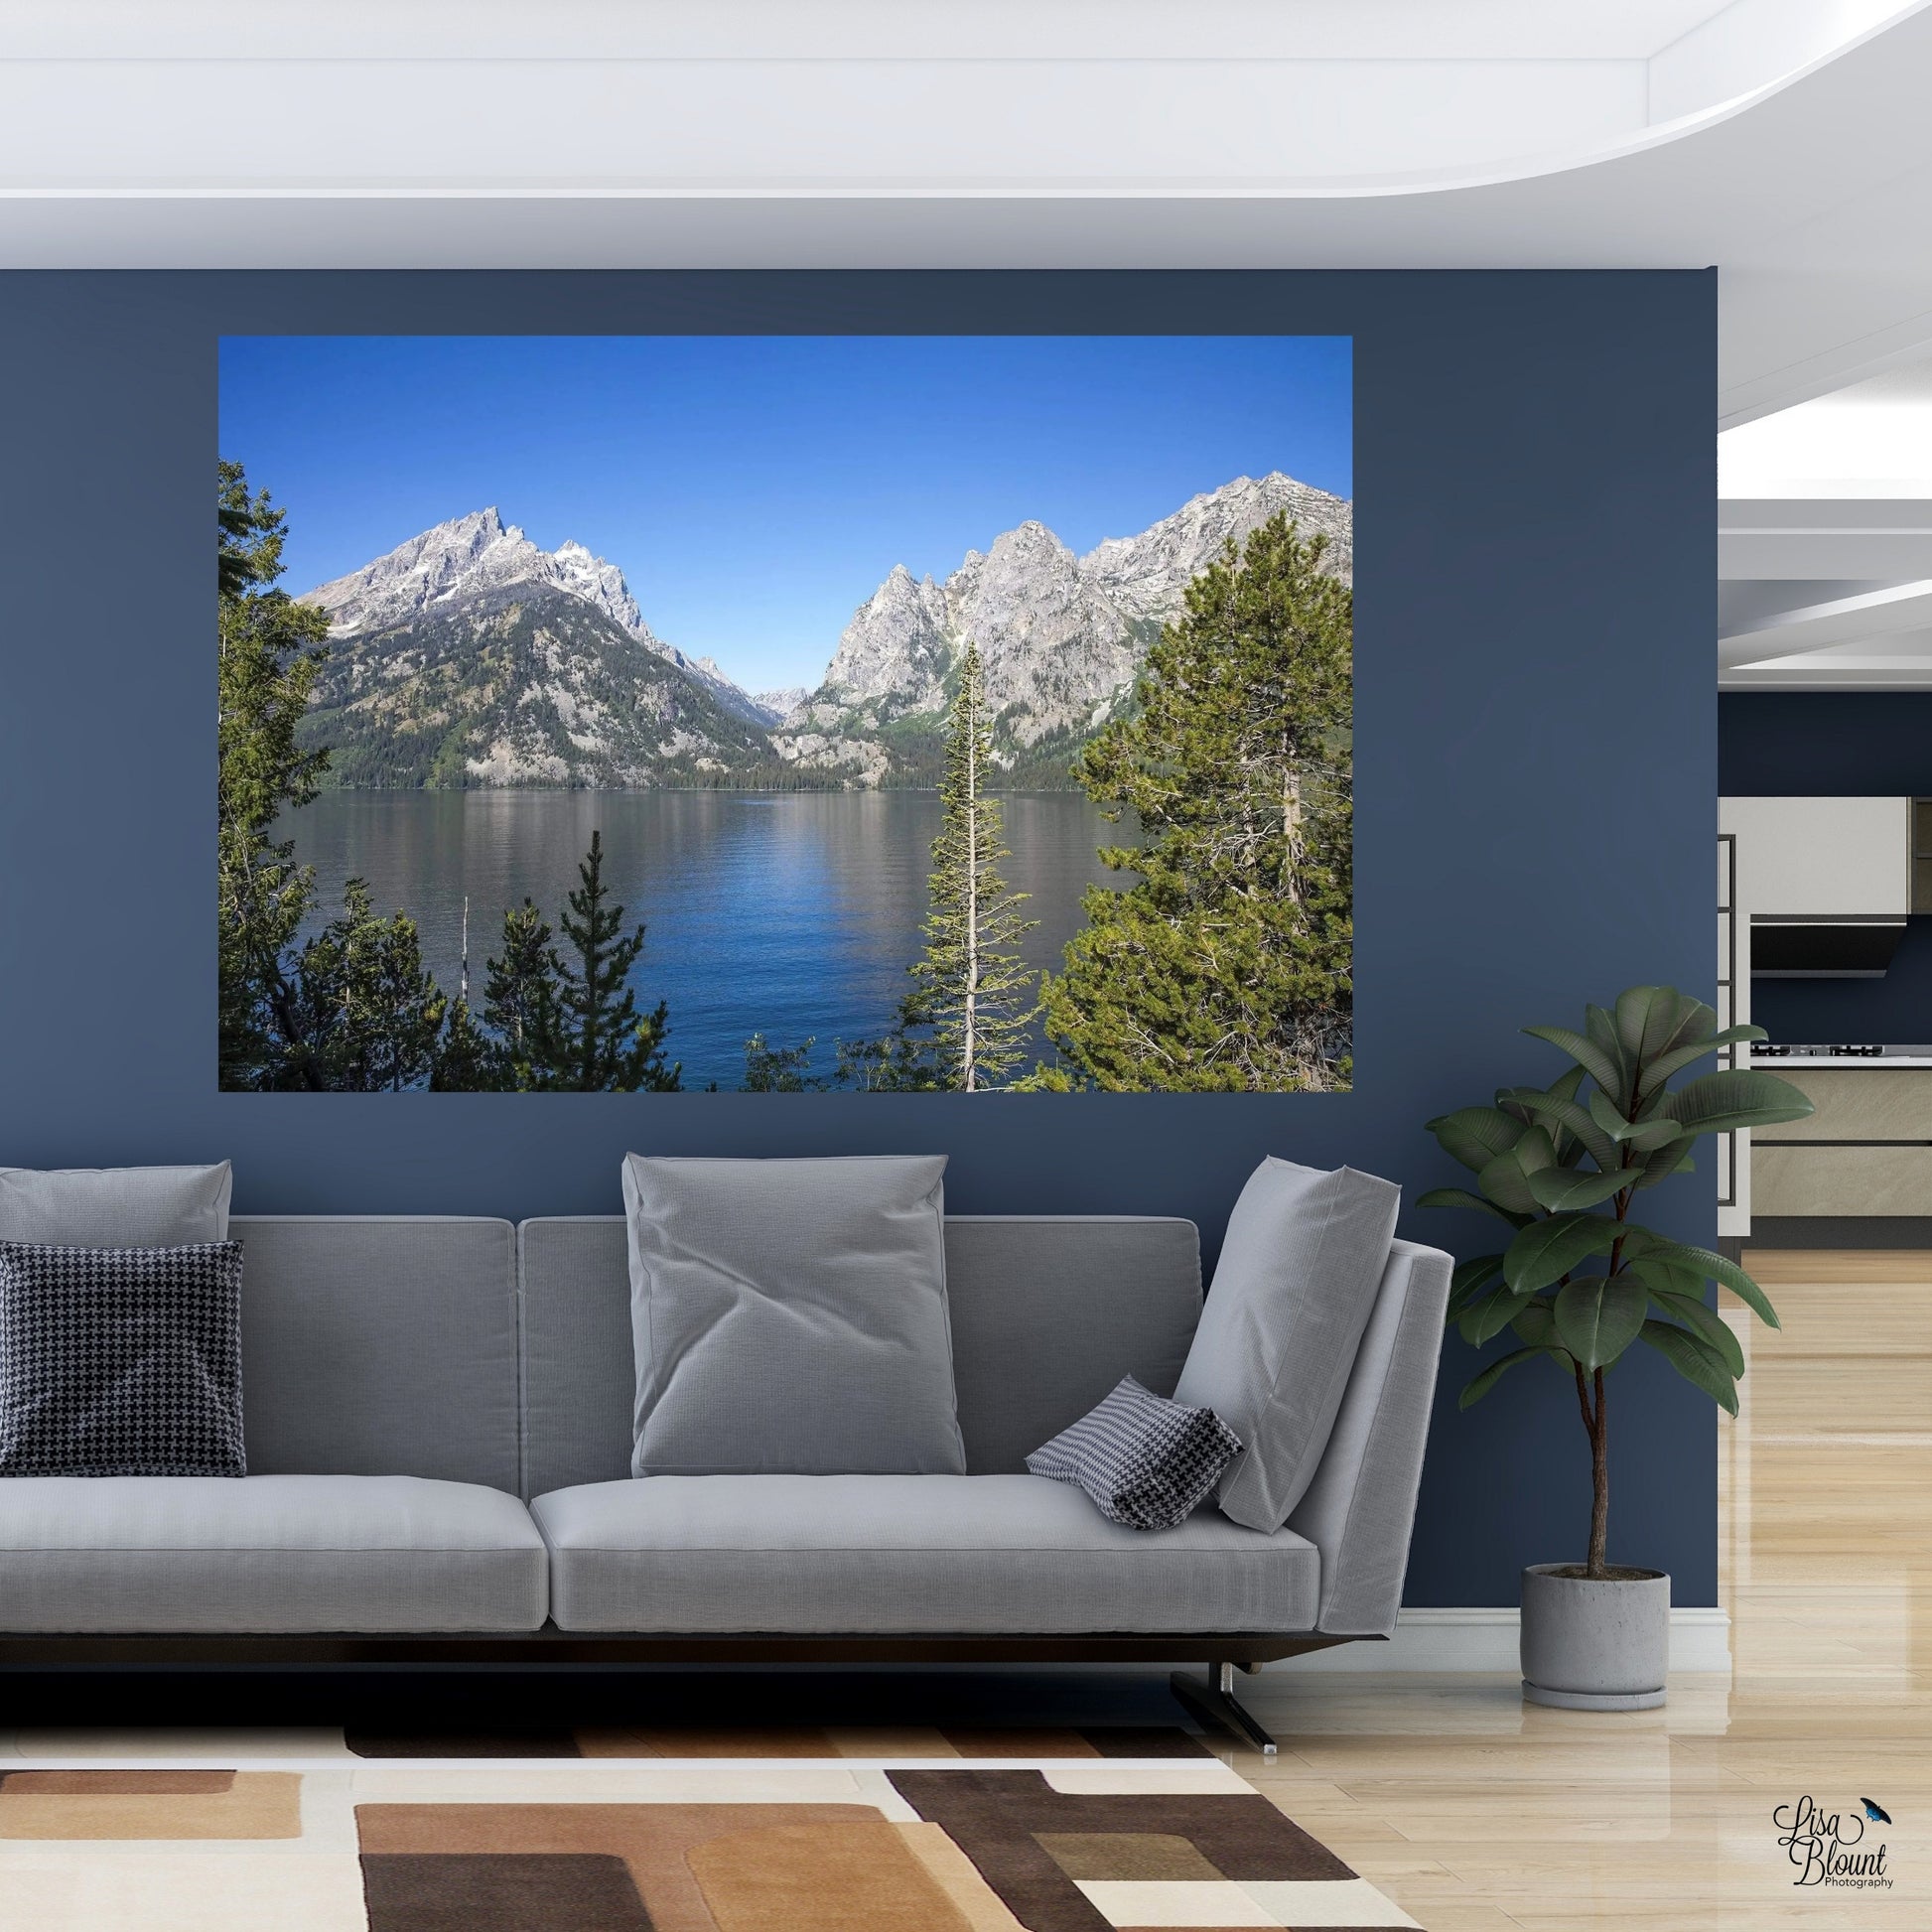 Art of Jenny Lake Teton hanging on blue office wall